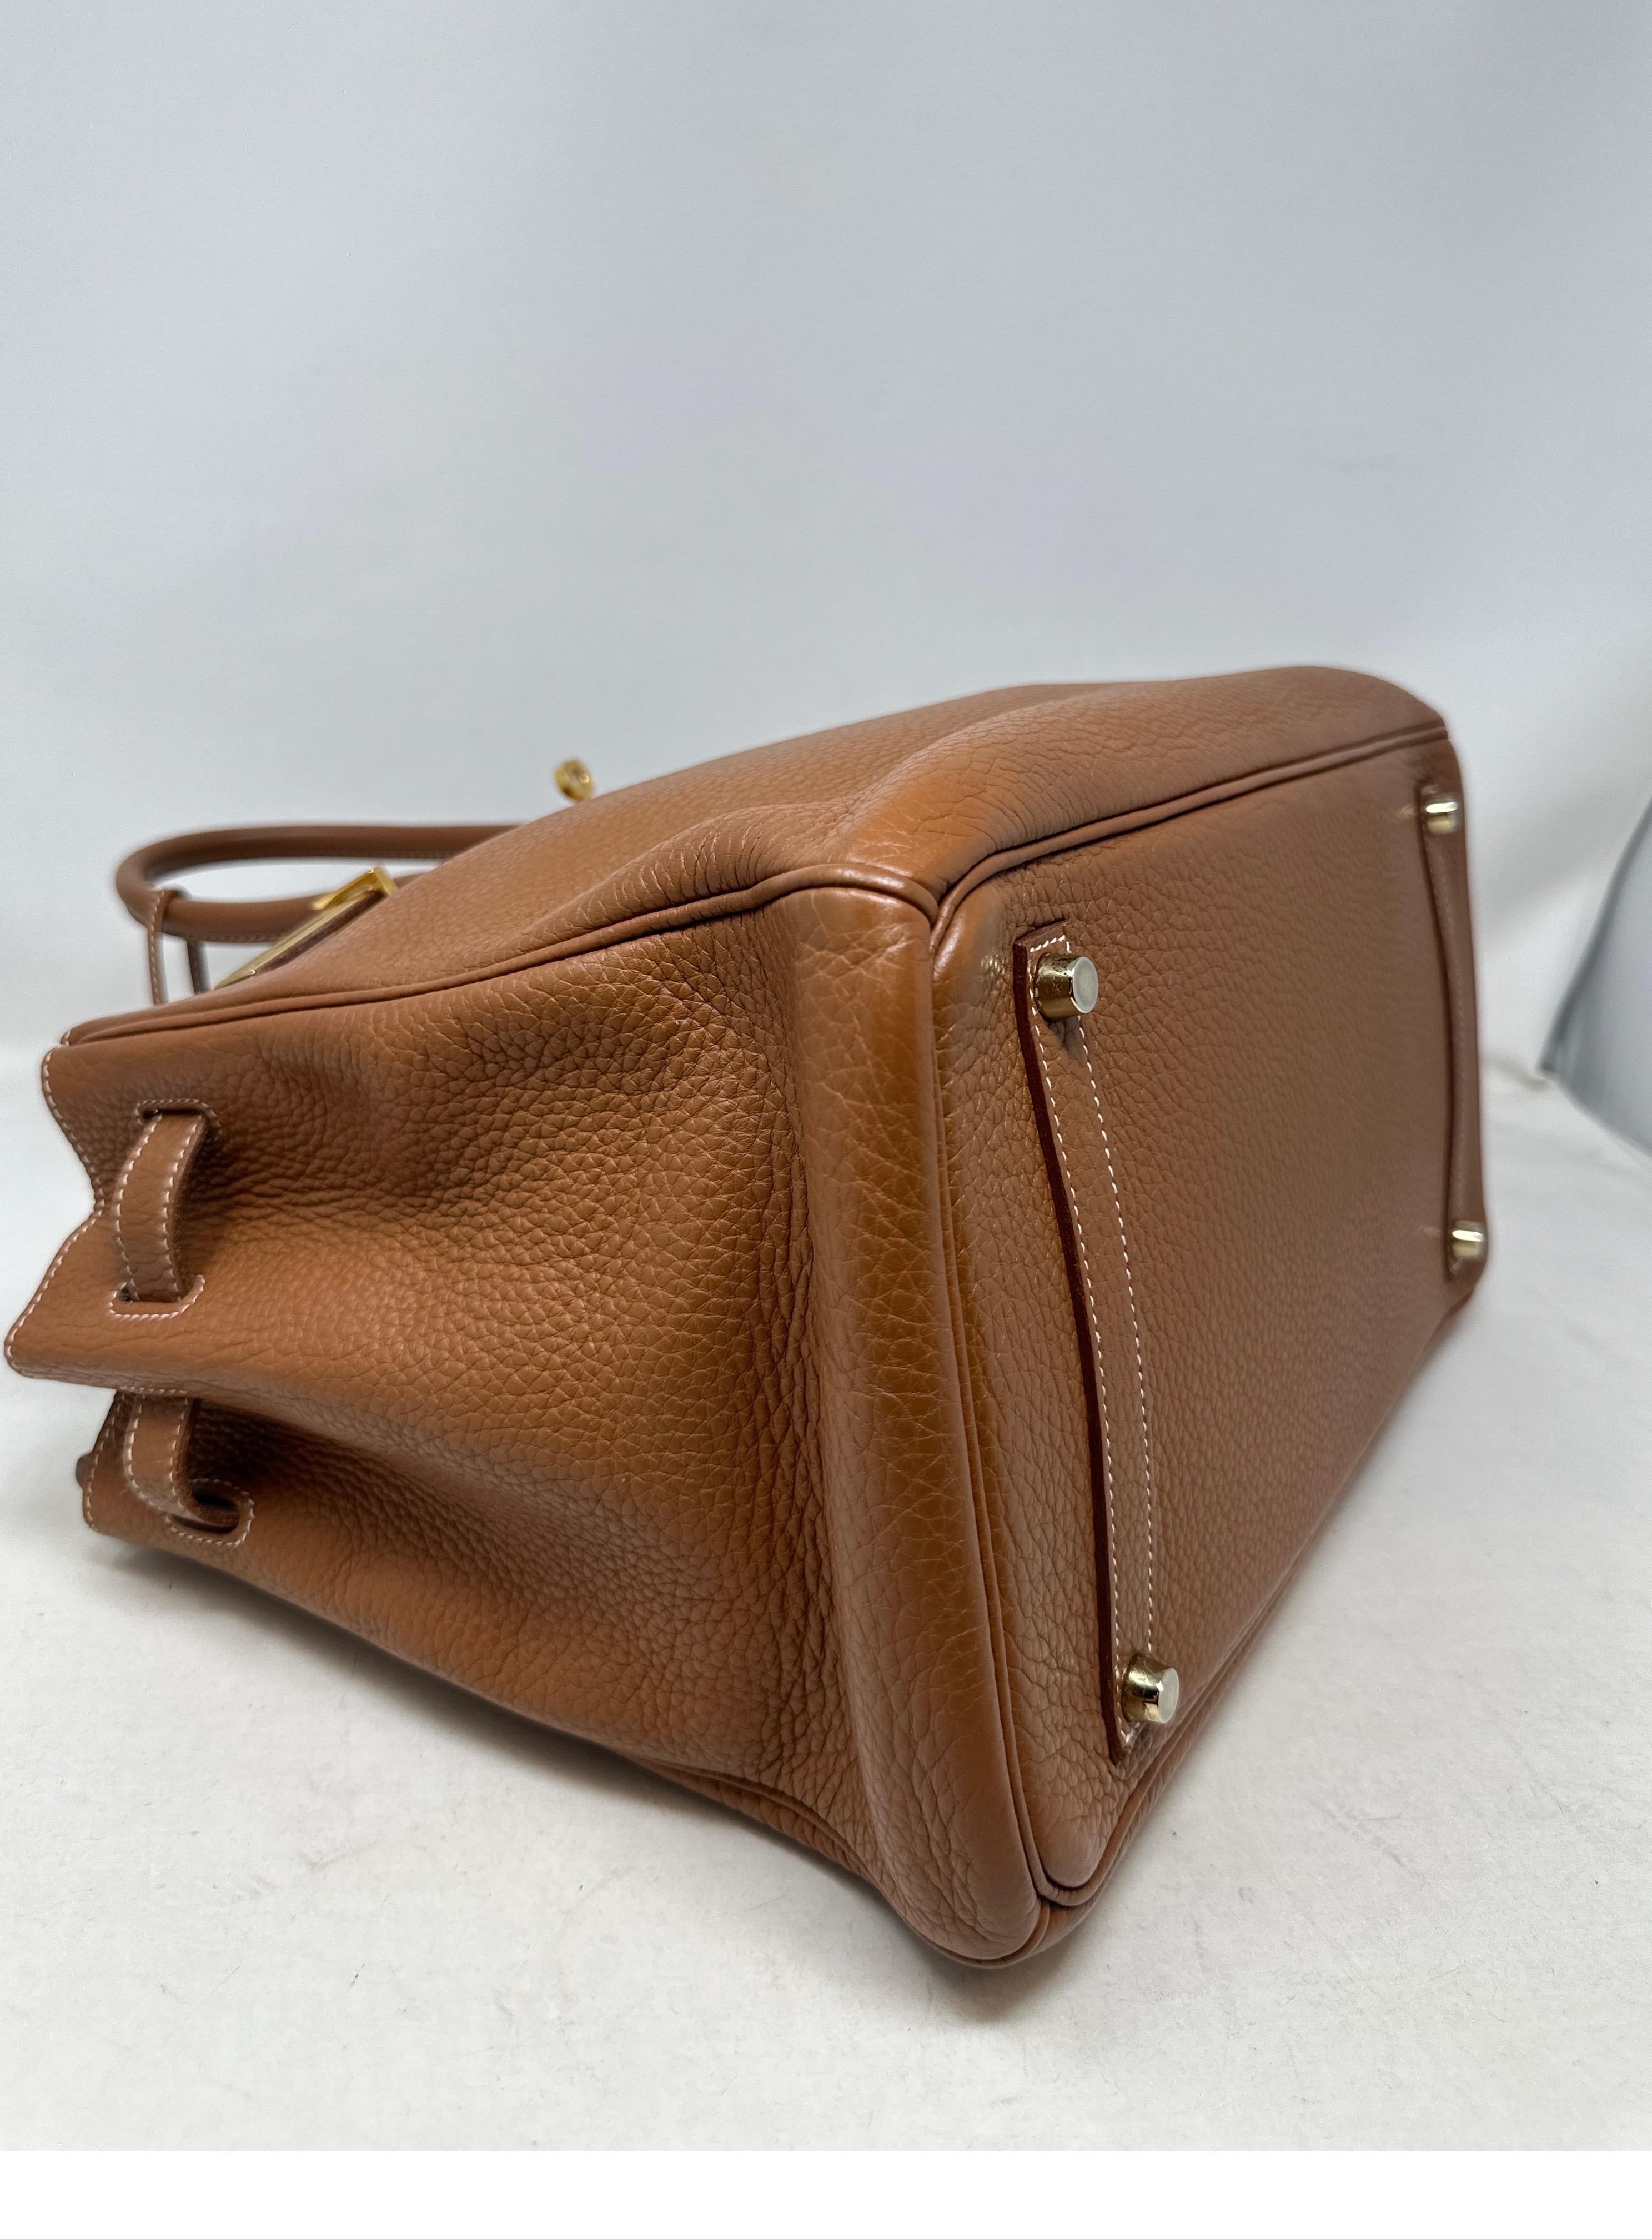 Hermes Gold Birkin 35 Bag  For Sale 2